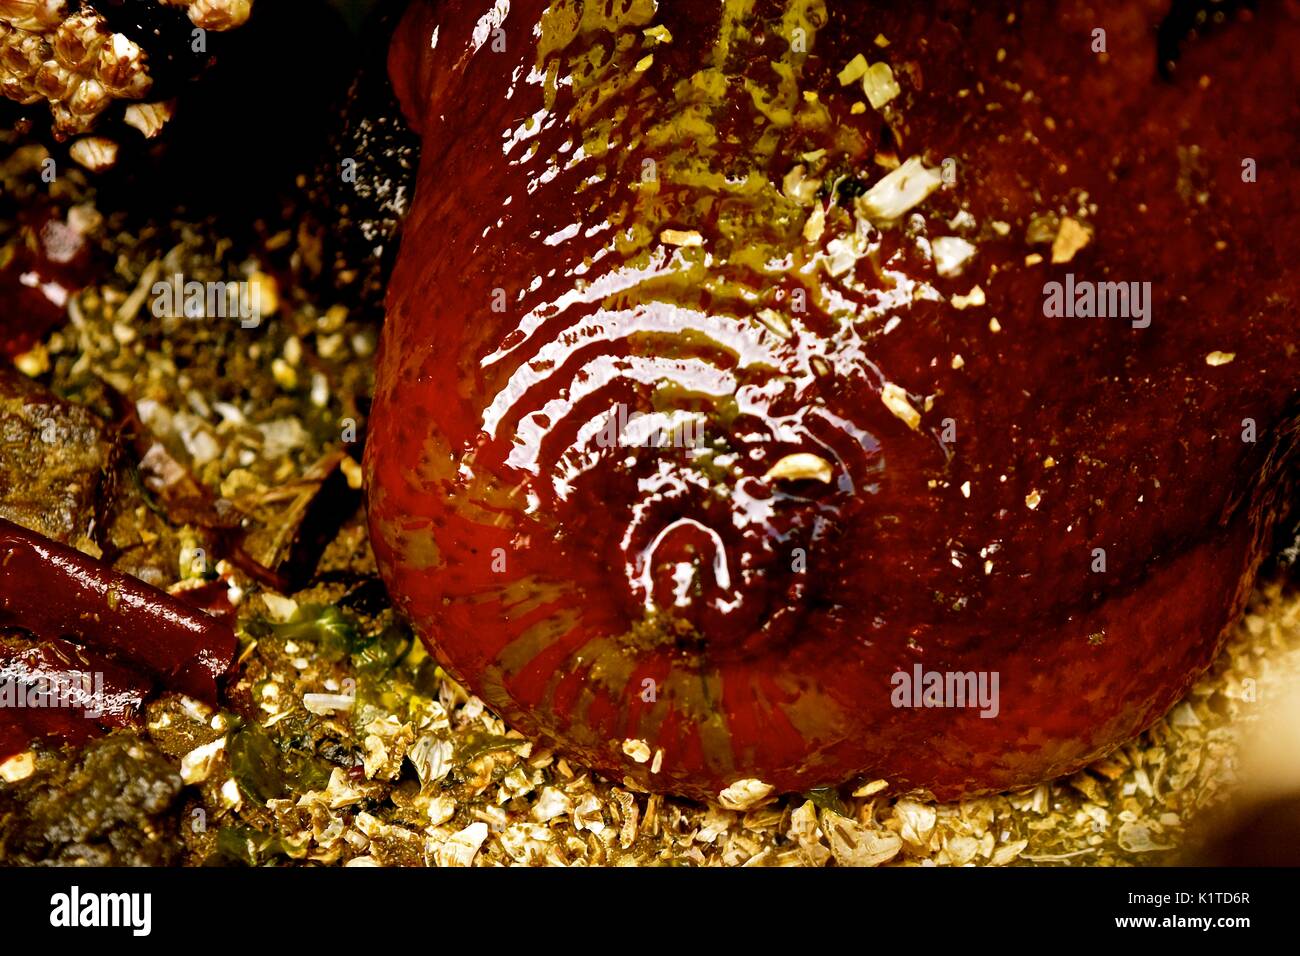 Ebbe am Puget Sound im Staat Washington offenbart viele Meerestiere, die normalerweise auf dem Meeresgrund wohnen, wie diese Seeanemone. Stockfoto